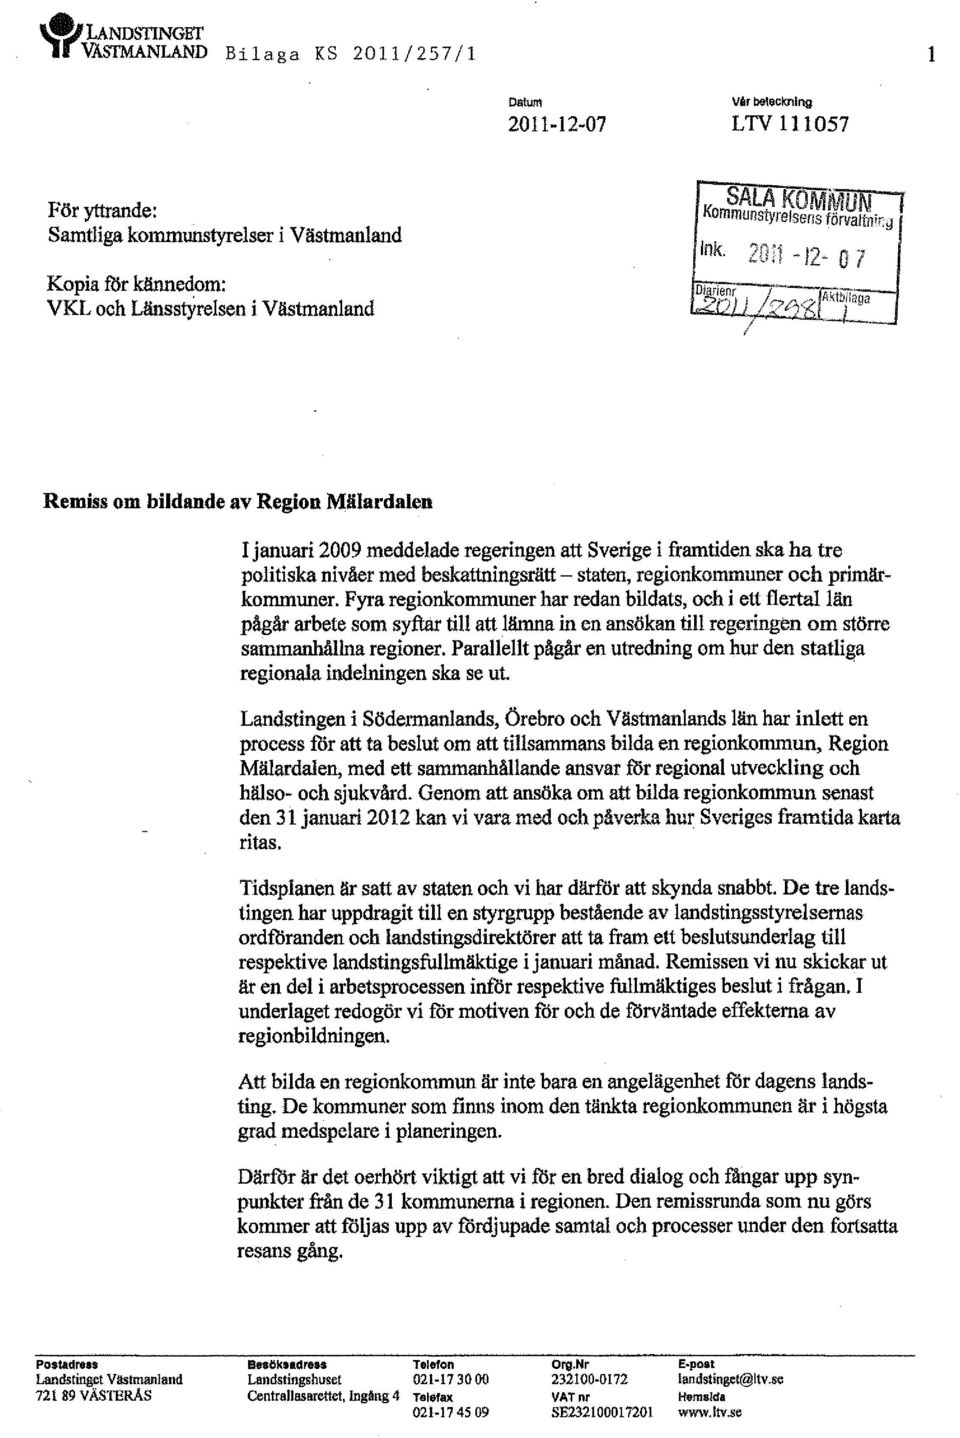 nsstYreIsen i Västmanland Remiss om bildande av Region Mälardalen I januari 2009 meddelade regeringen att Sverige i framtiden ska ha tre politiska nivåer med beskattningsrätt - staten, regionkommuner